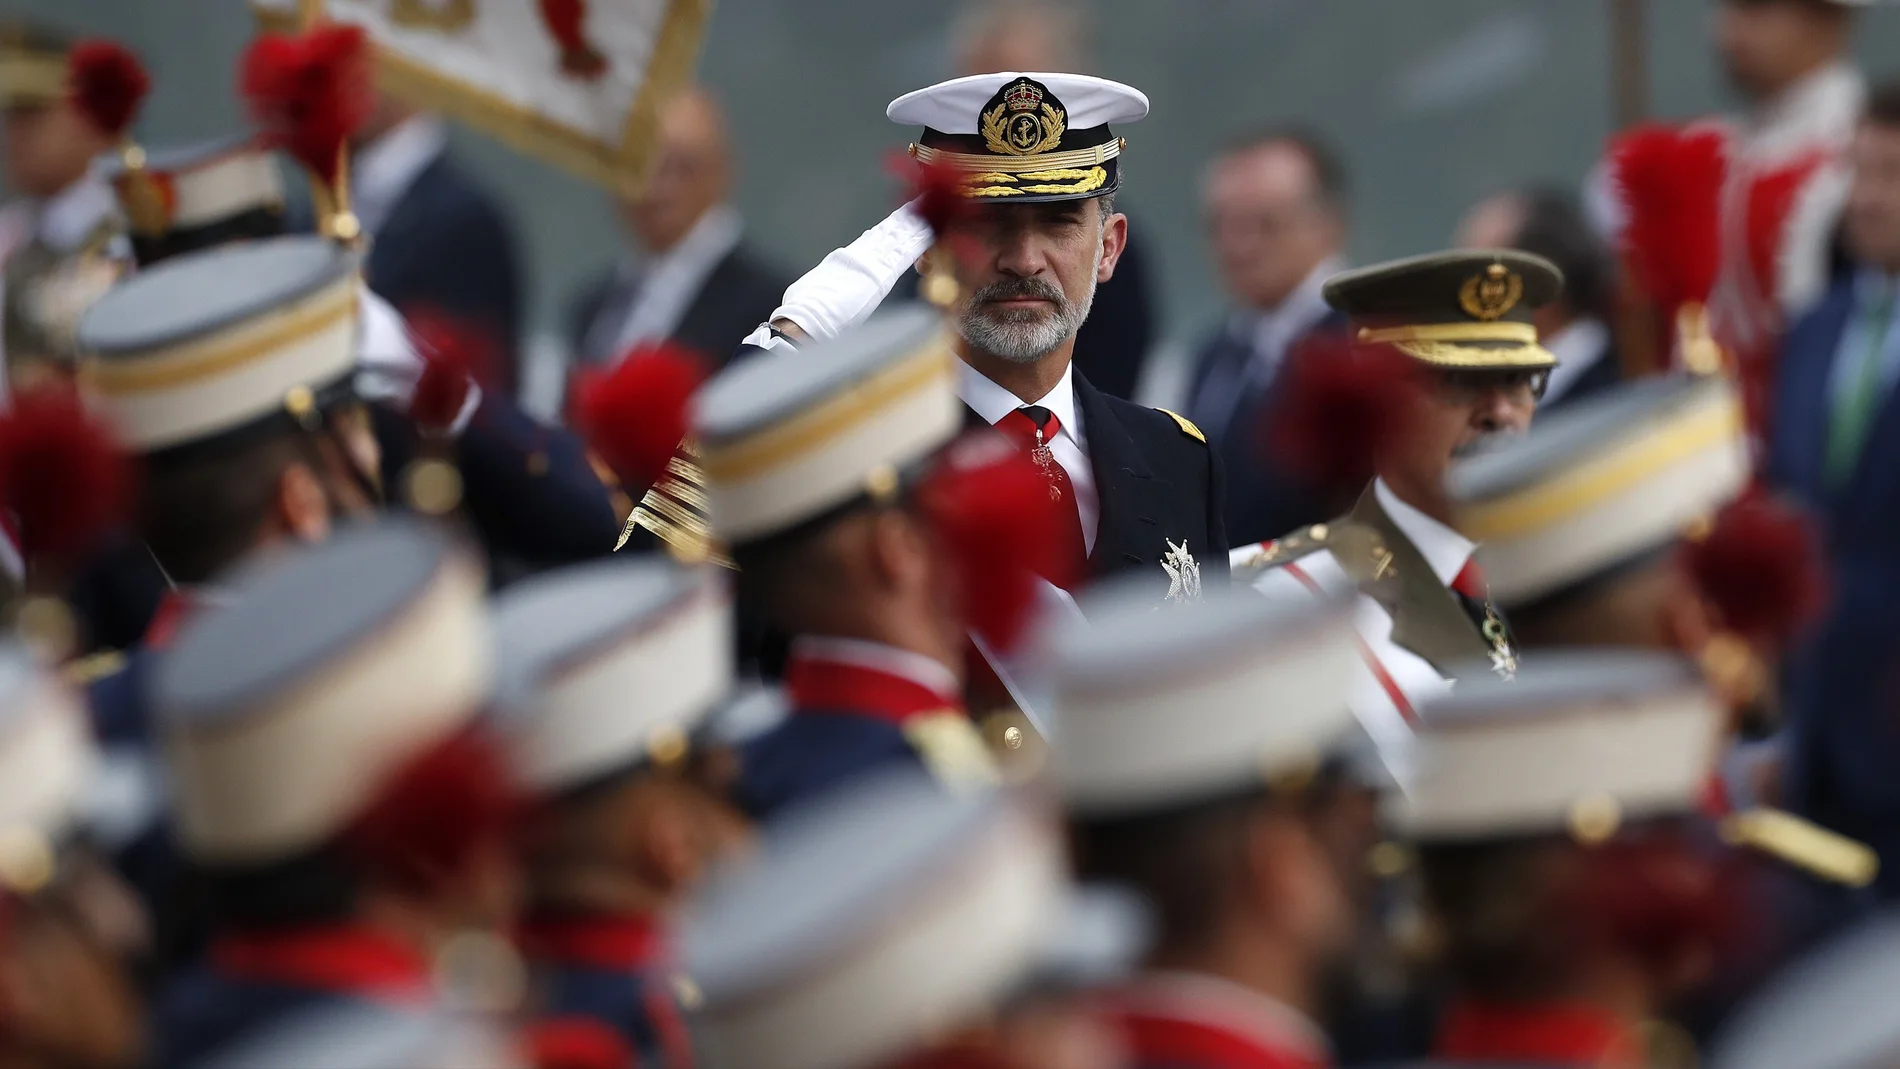 Imagen del rey Felipe VI durante del desfile del 12 de octubre 